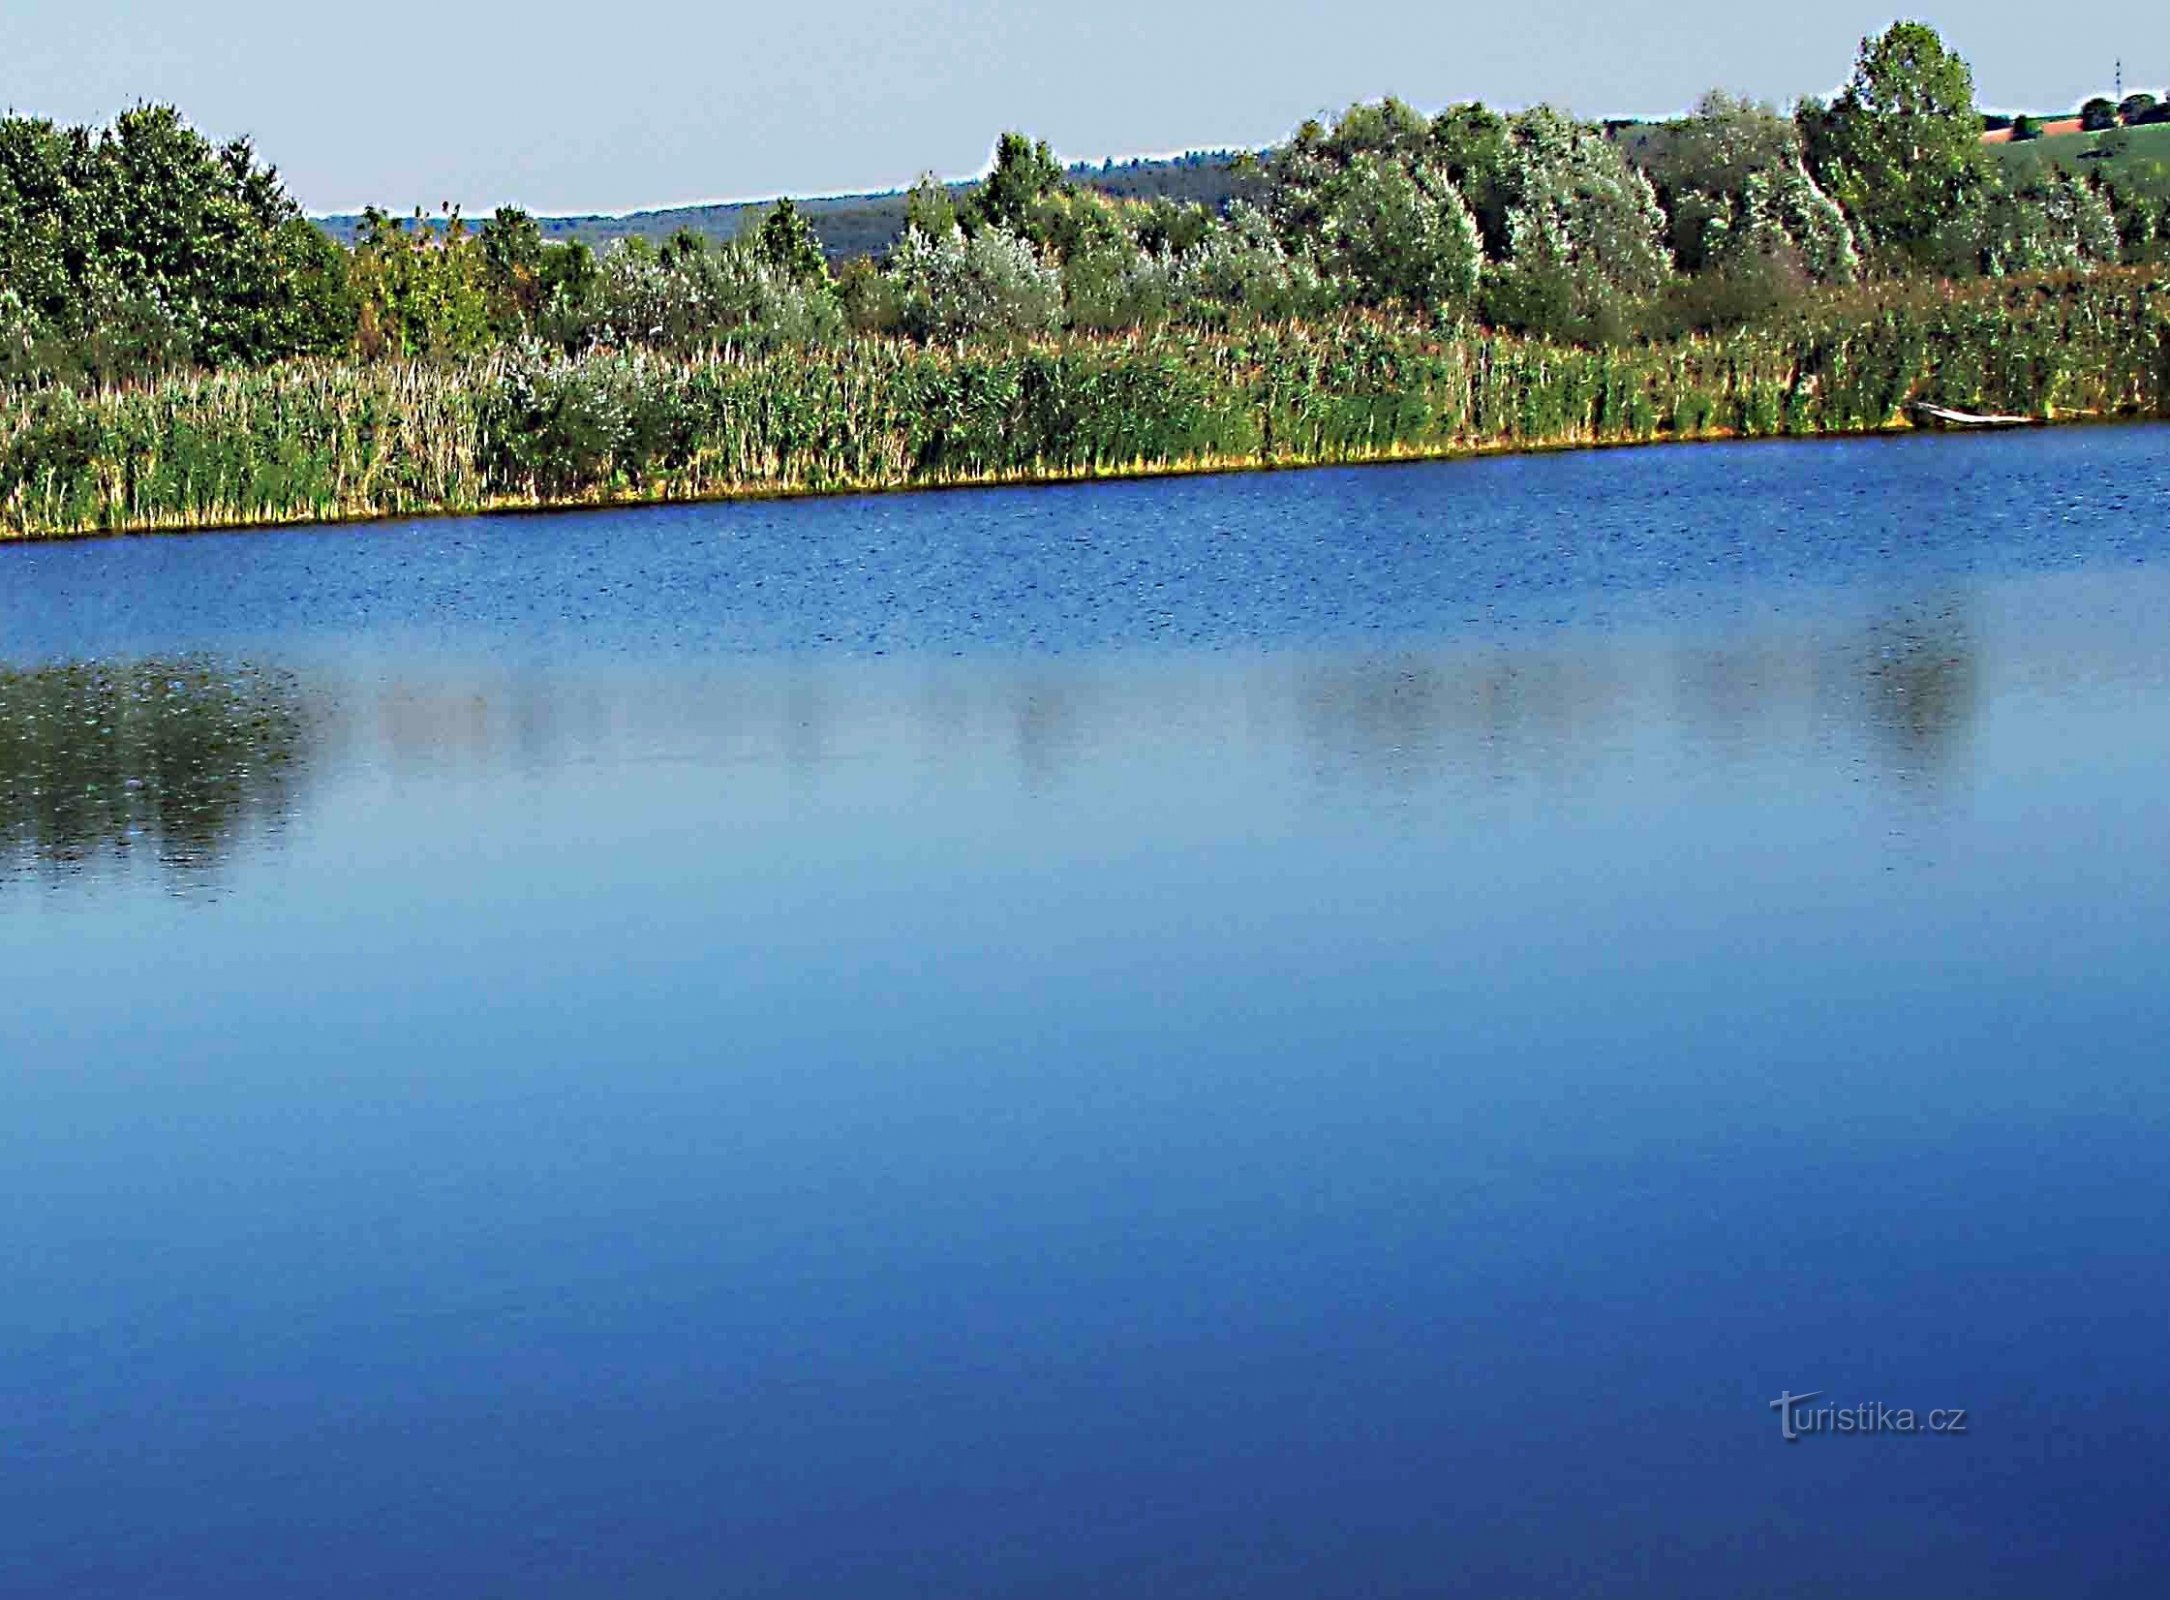 Søerne omkring Spytihněvi og kajen